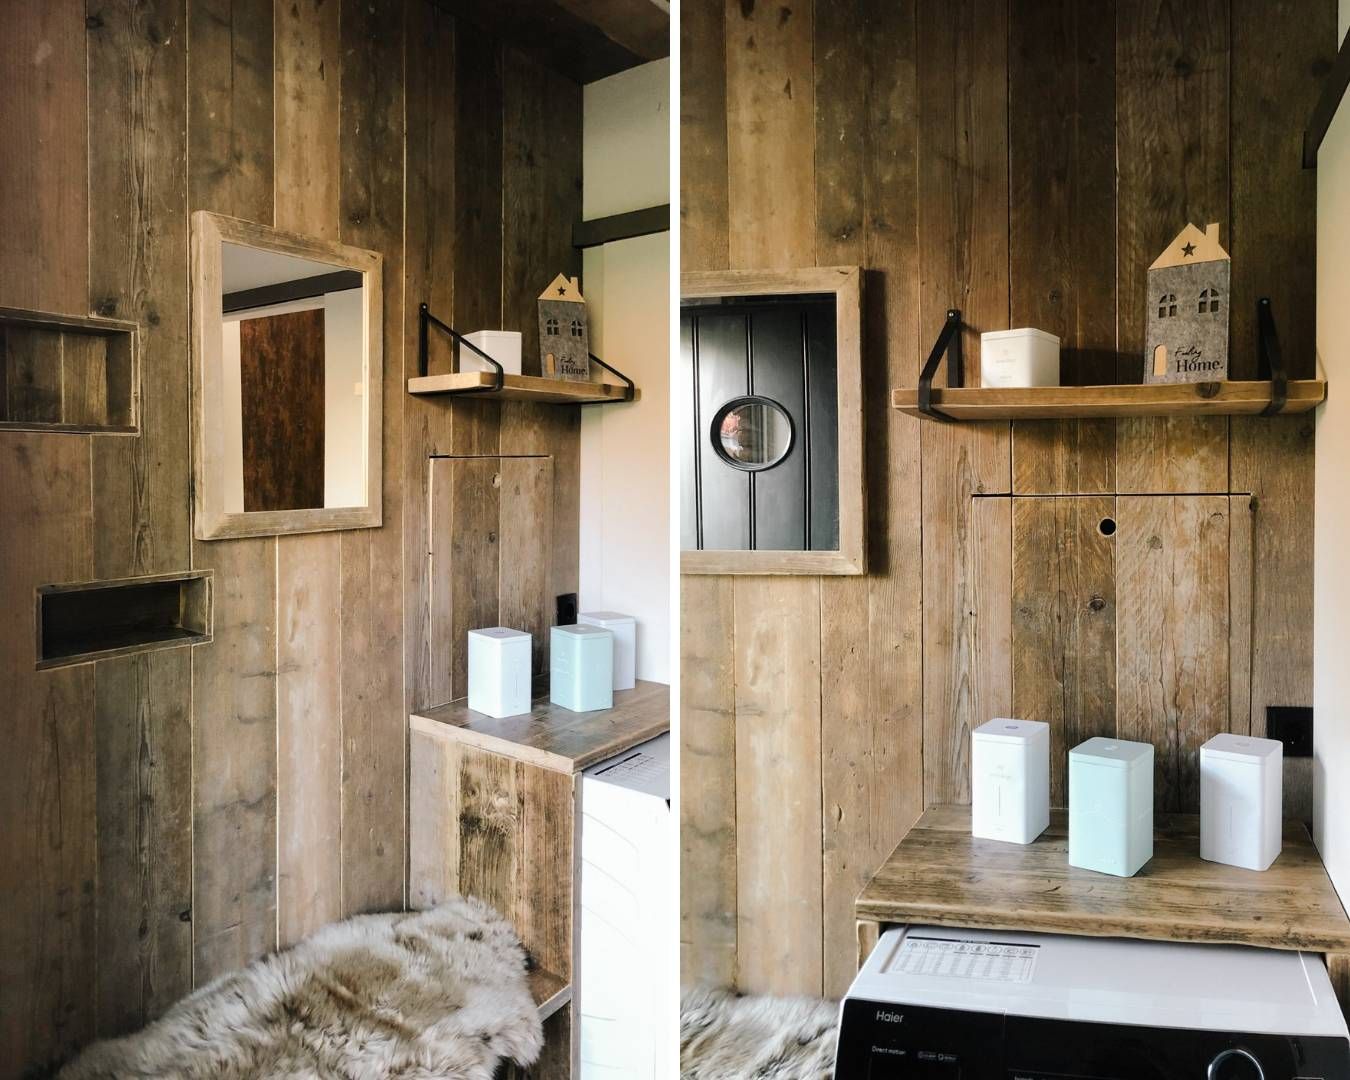 Wandverkleidung aus Altholz hat einen besonderen Charme und bringt Wärme in jeden Raum. Hier wurde ein Hauswirtschaftsraum mit Altholz aus Gerüstbohlen verkleidet.